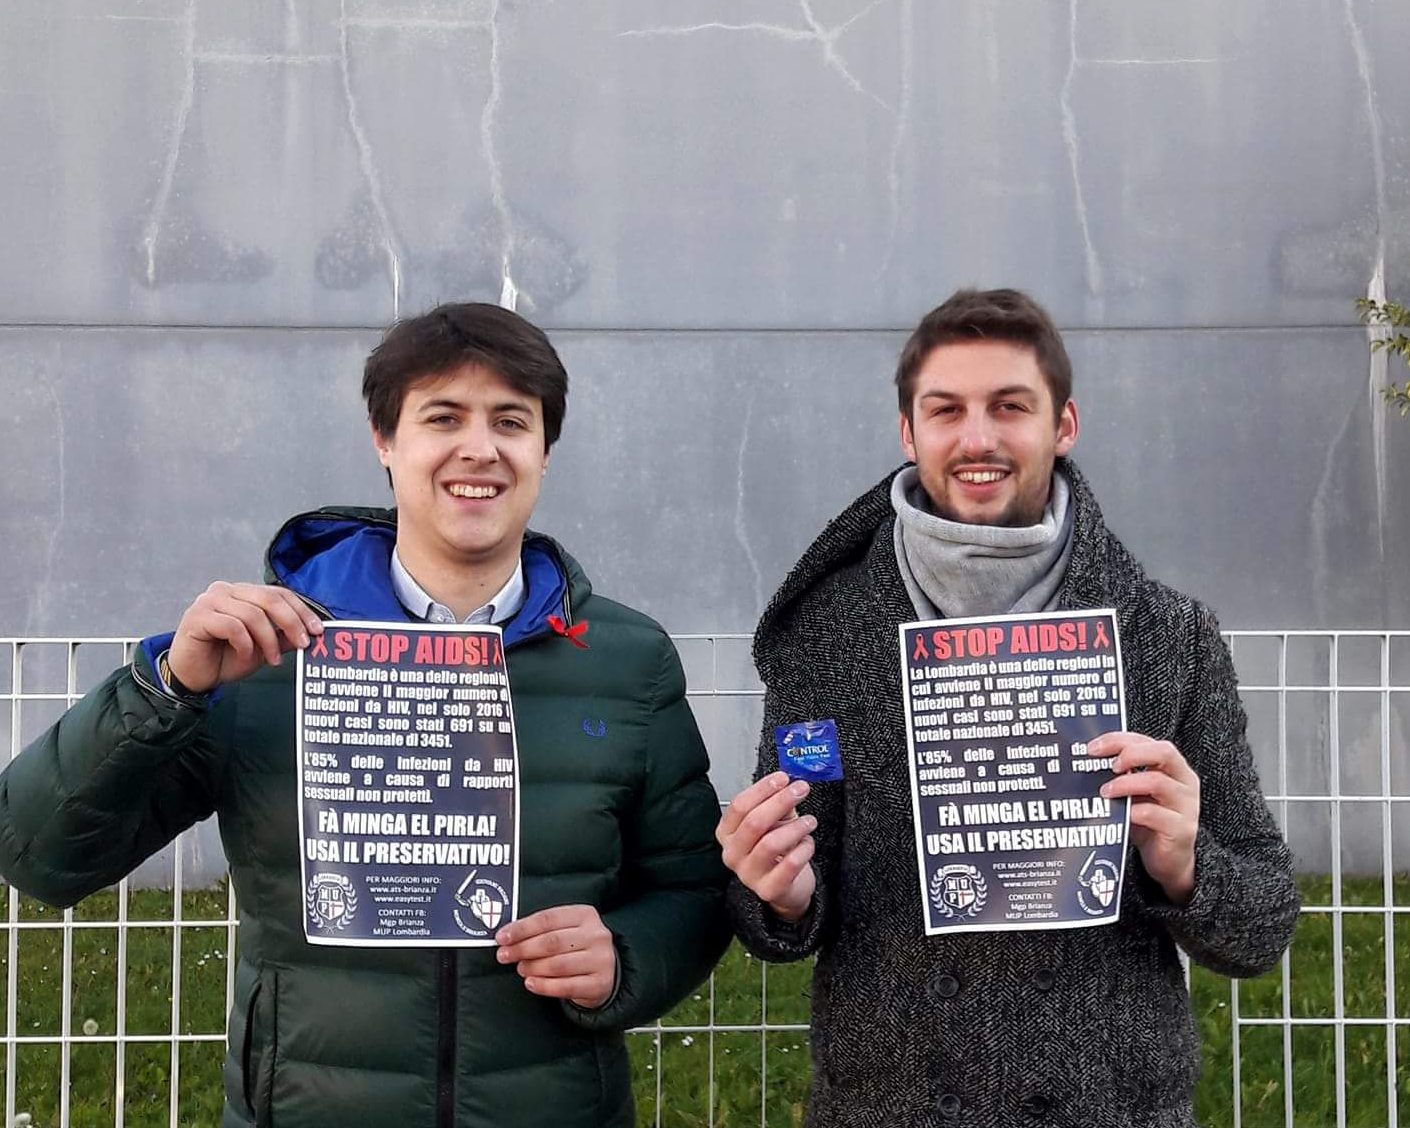 Aids profilattici gratis davanti allUniversità a Monza